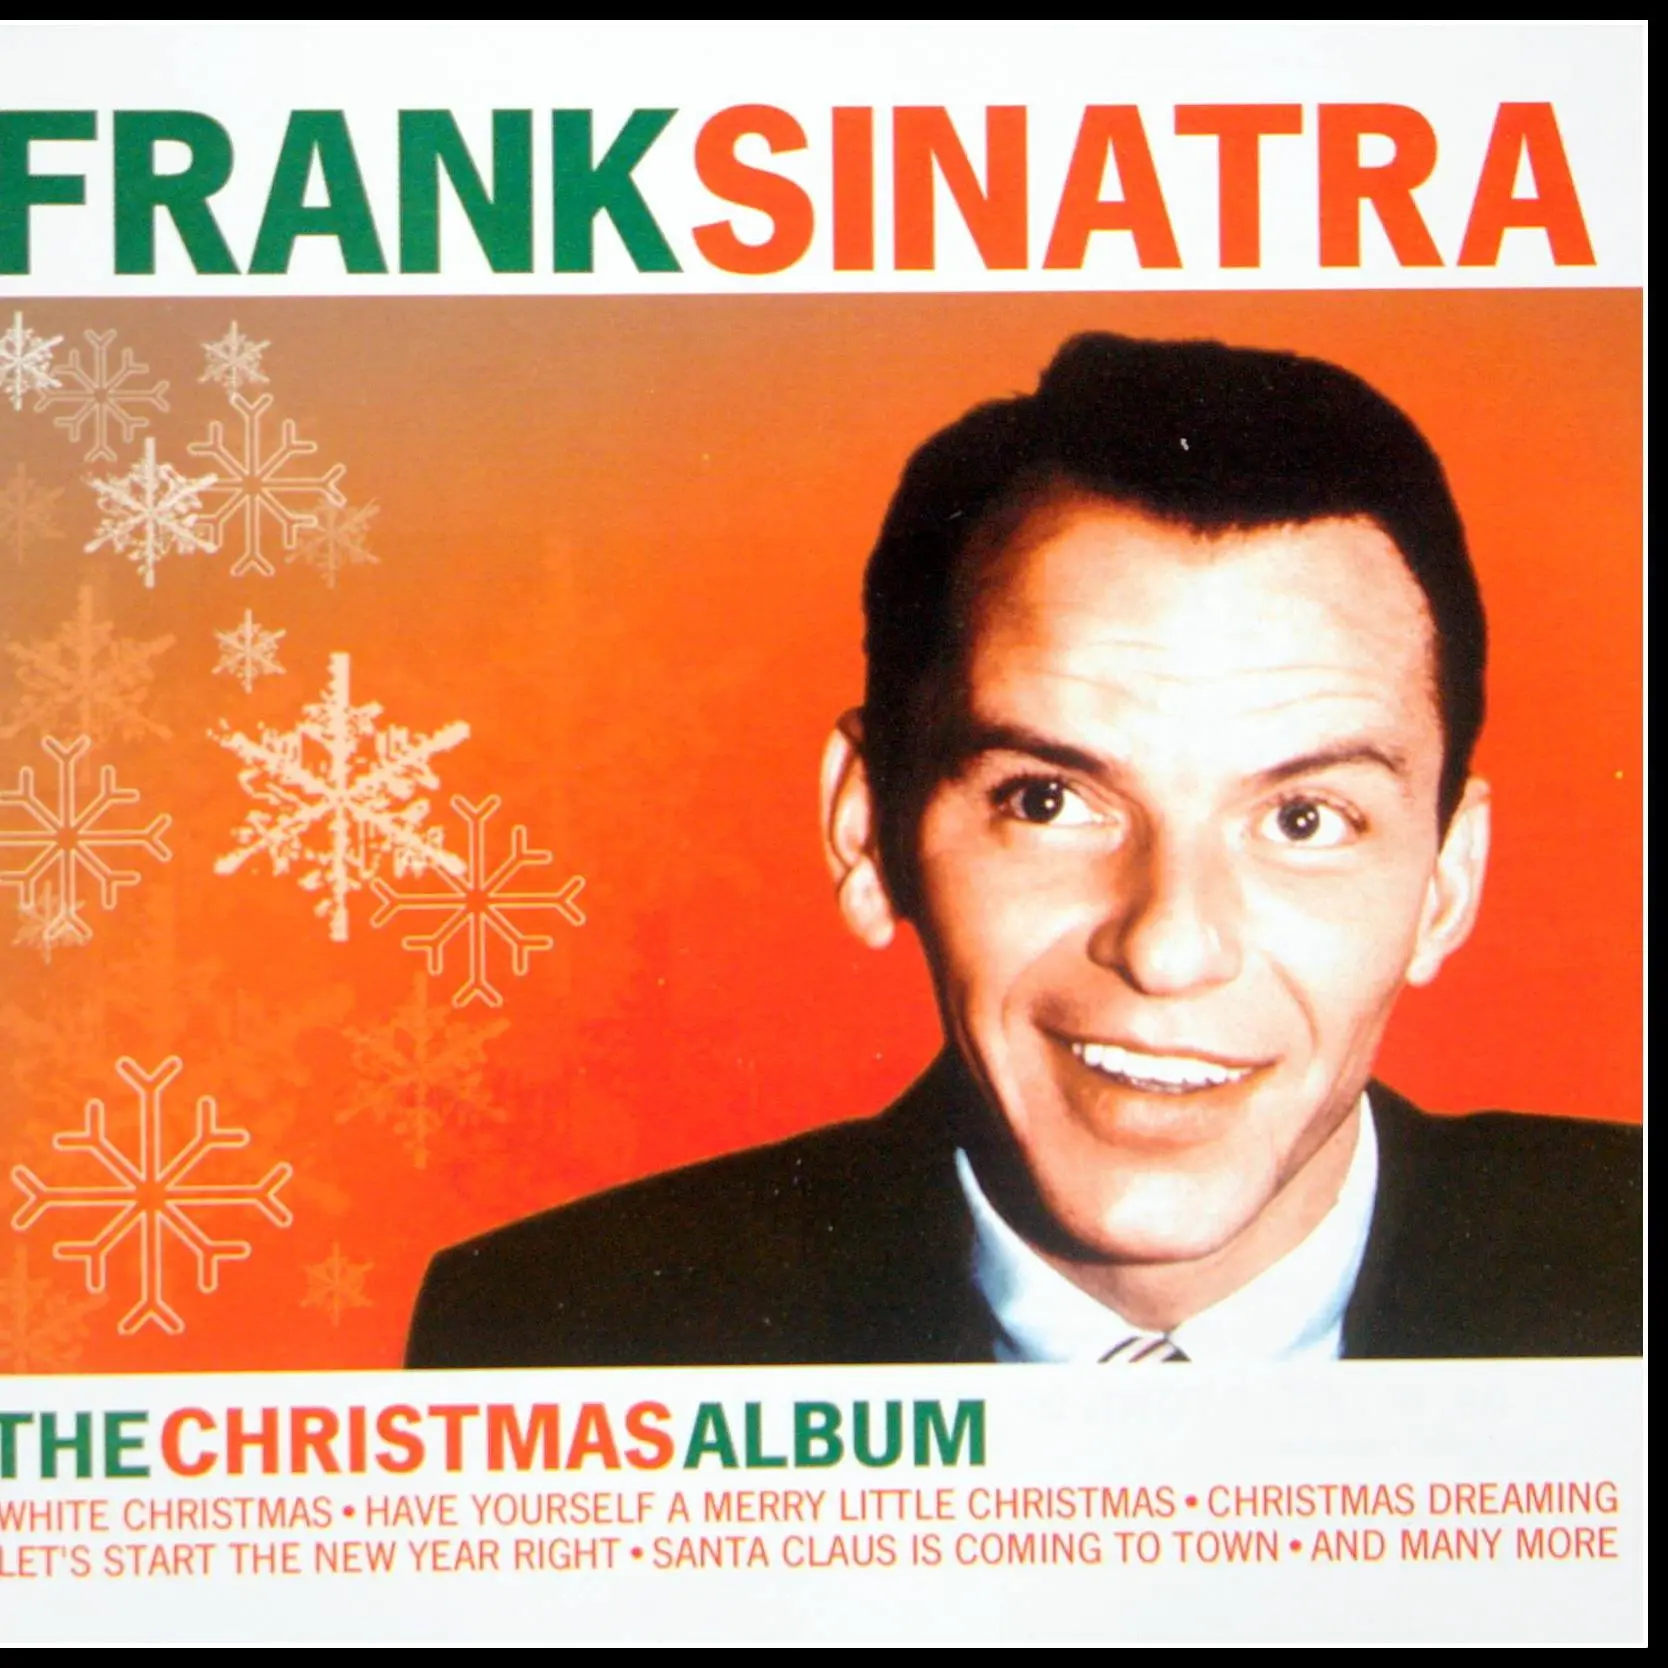 Cinq reprises exclusives de Frank Sinatra pour fêter Noël